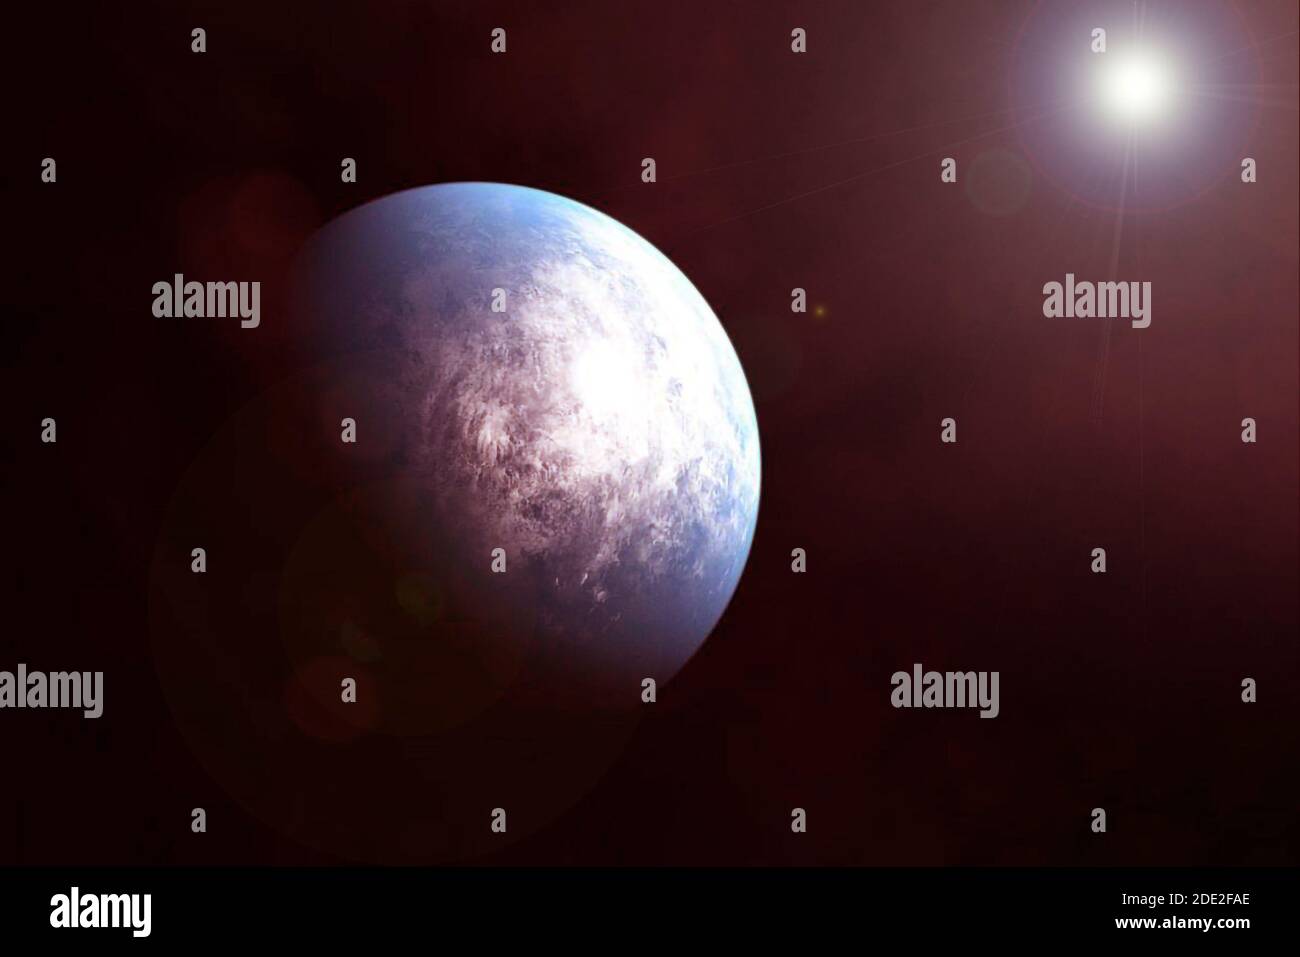 Exoplanet im Weltraum. Elemente dieses Bildes wurden von der NASA eingerichtet. Für jeden Zweck. Stockfoto